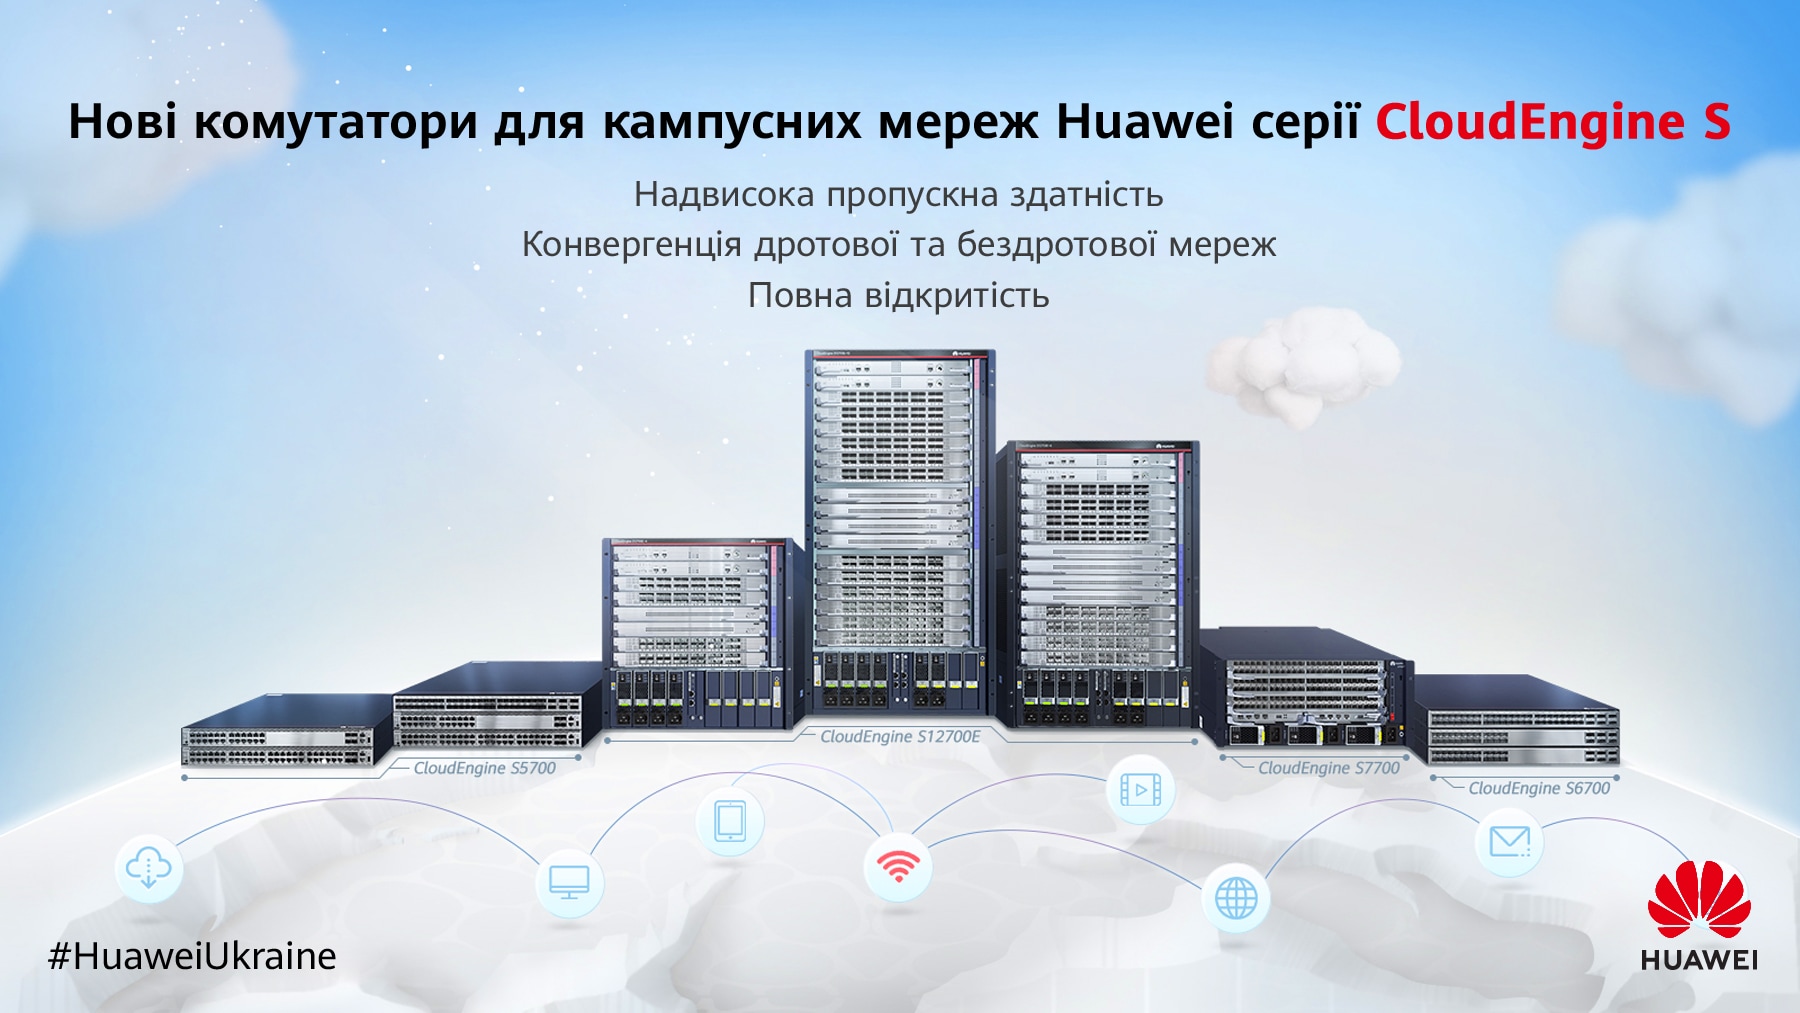 Huaweib2b post7 v1 0